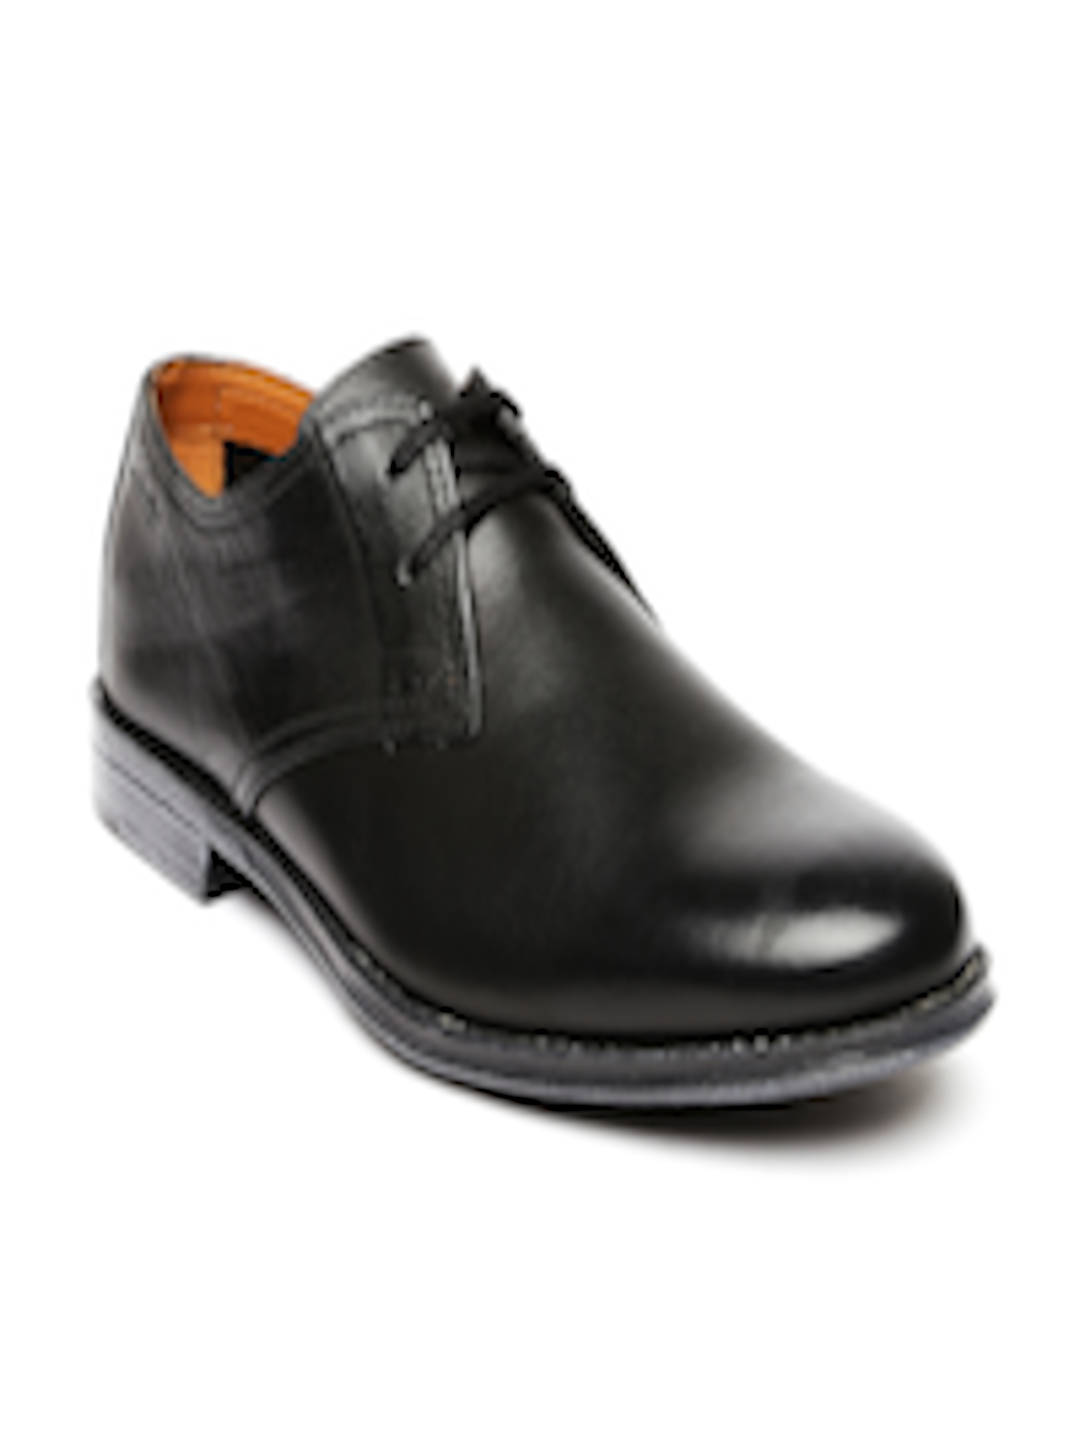 Buy Clarks Men Black Leather Formal Shoes - Formal Shoes for Men ...